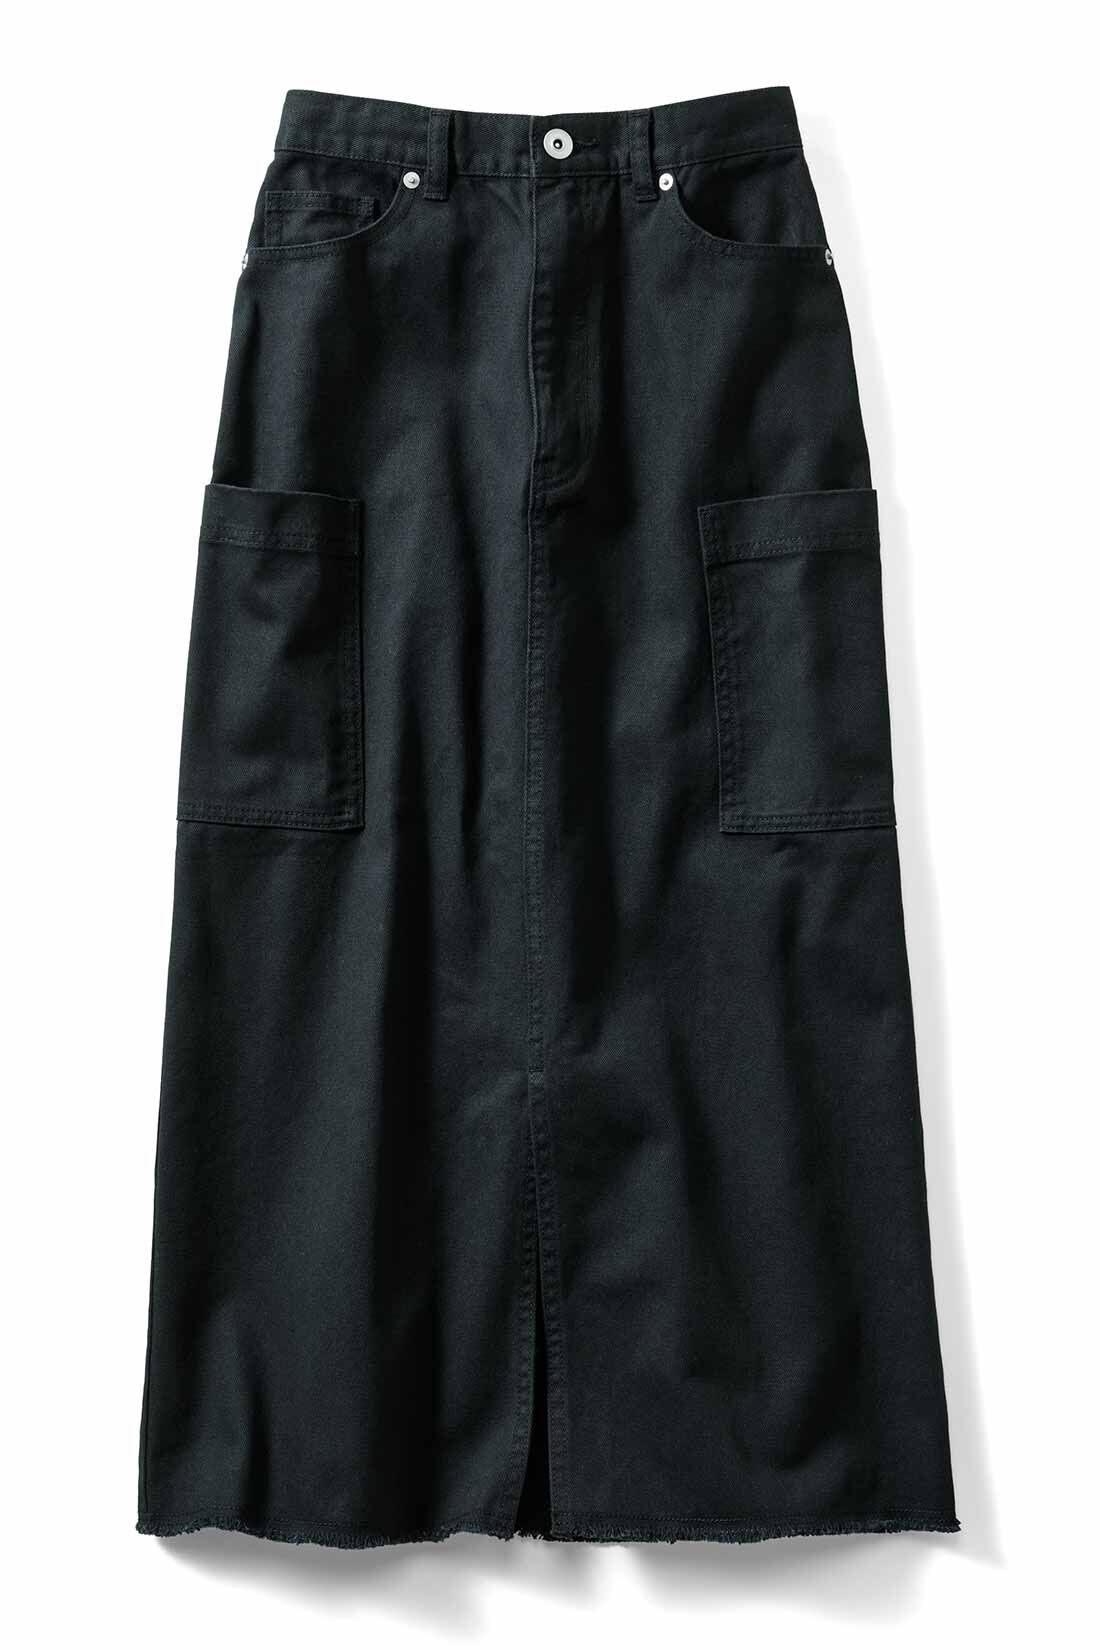 IEDIT|IEDIT[イディット]　かっこいいのにどこか女っぽい こだわりを詰め込んだIラインカーゴスカート〈ブラック〉|〈ブラック〉